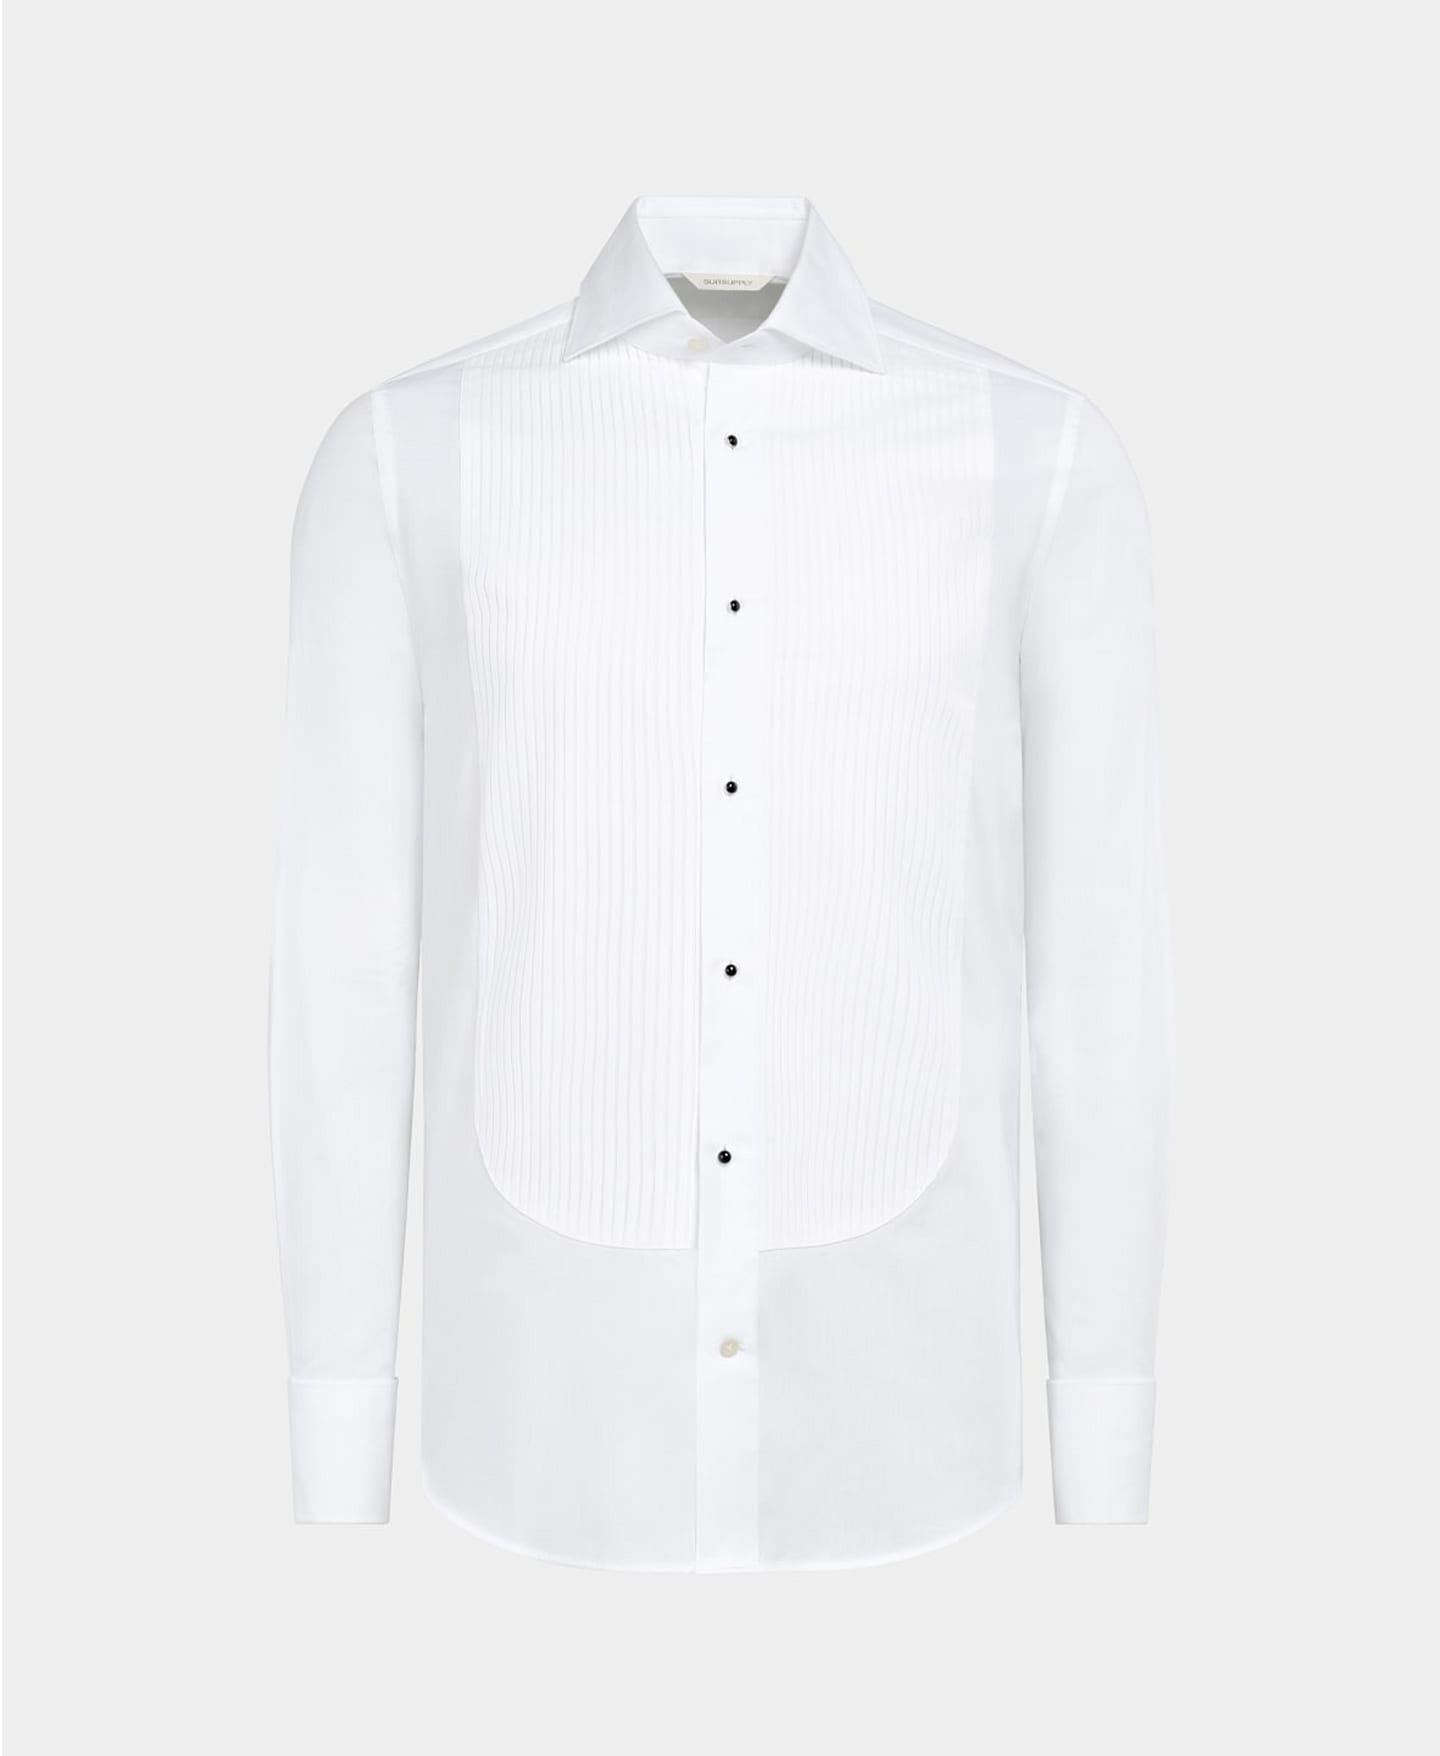 Weißes Smokinghemd mit Plissee-Latz und schwarzen Druckknöpfen aus Emaille.